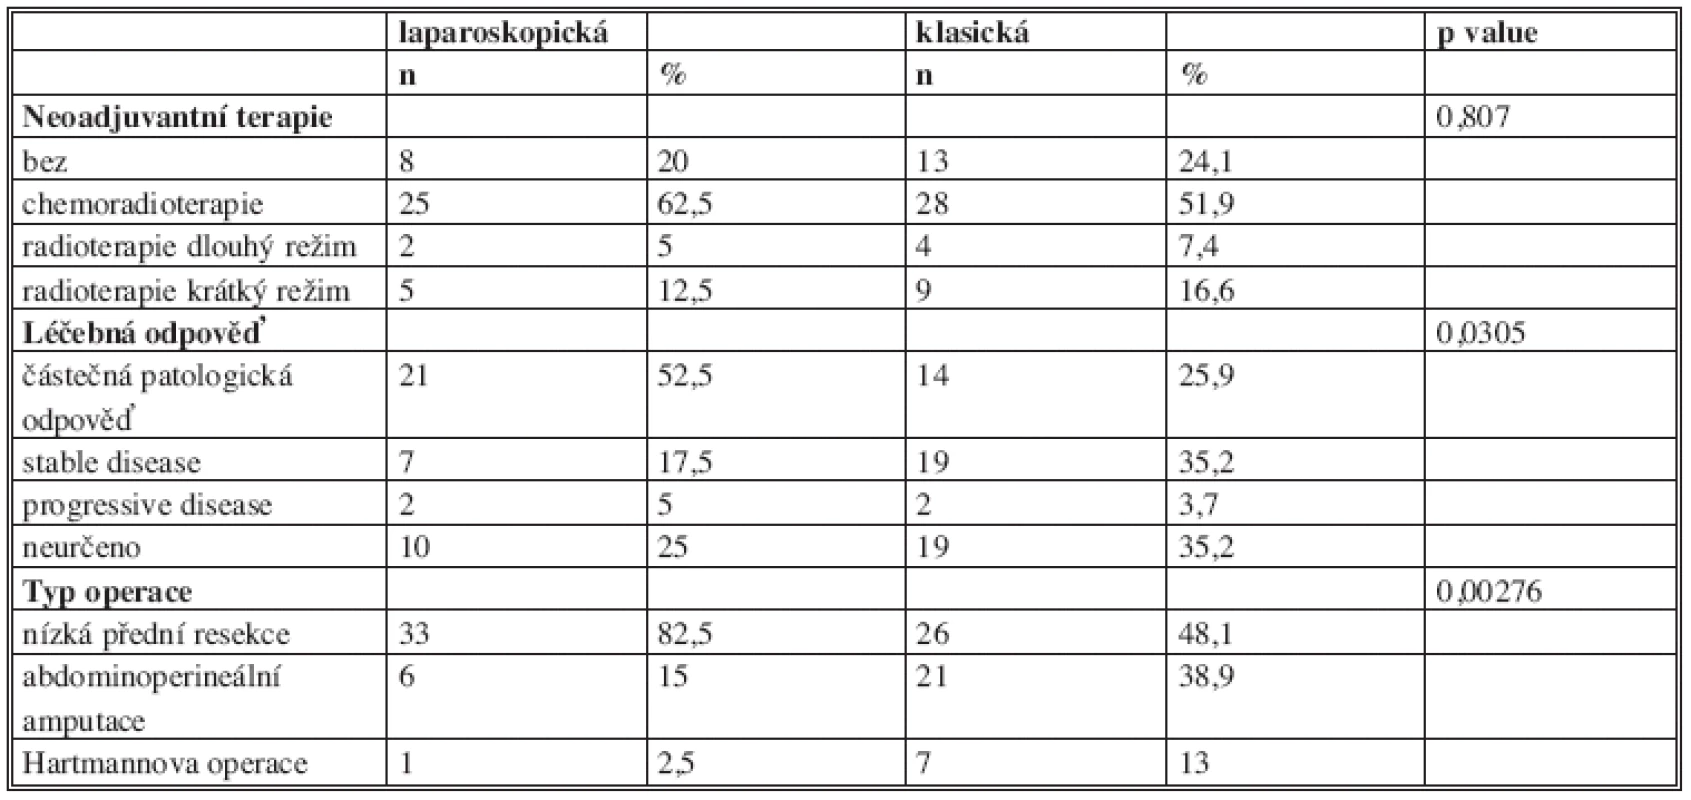 Srovnání skupiny laparoskopické a otevřené (Faktory spojené s léčebným procesem)
Tab. 2: Comparison of the laparoscopy and open group. (Factors associated with treatment)